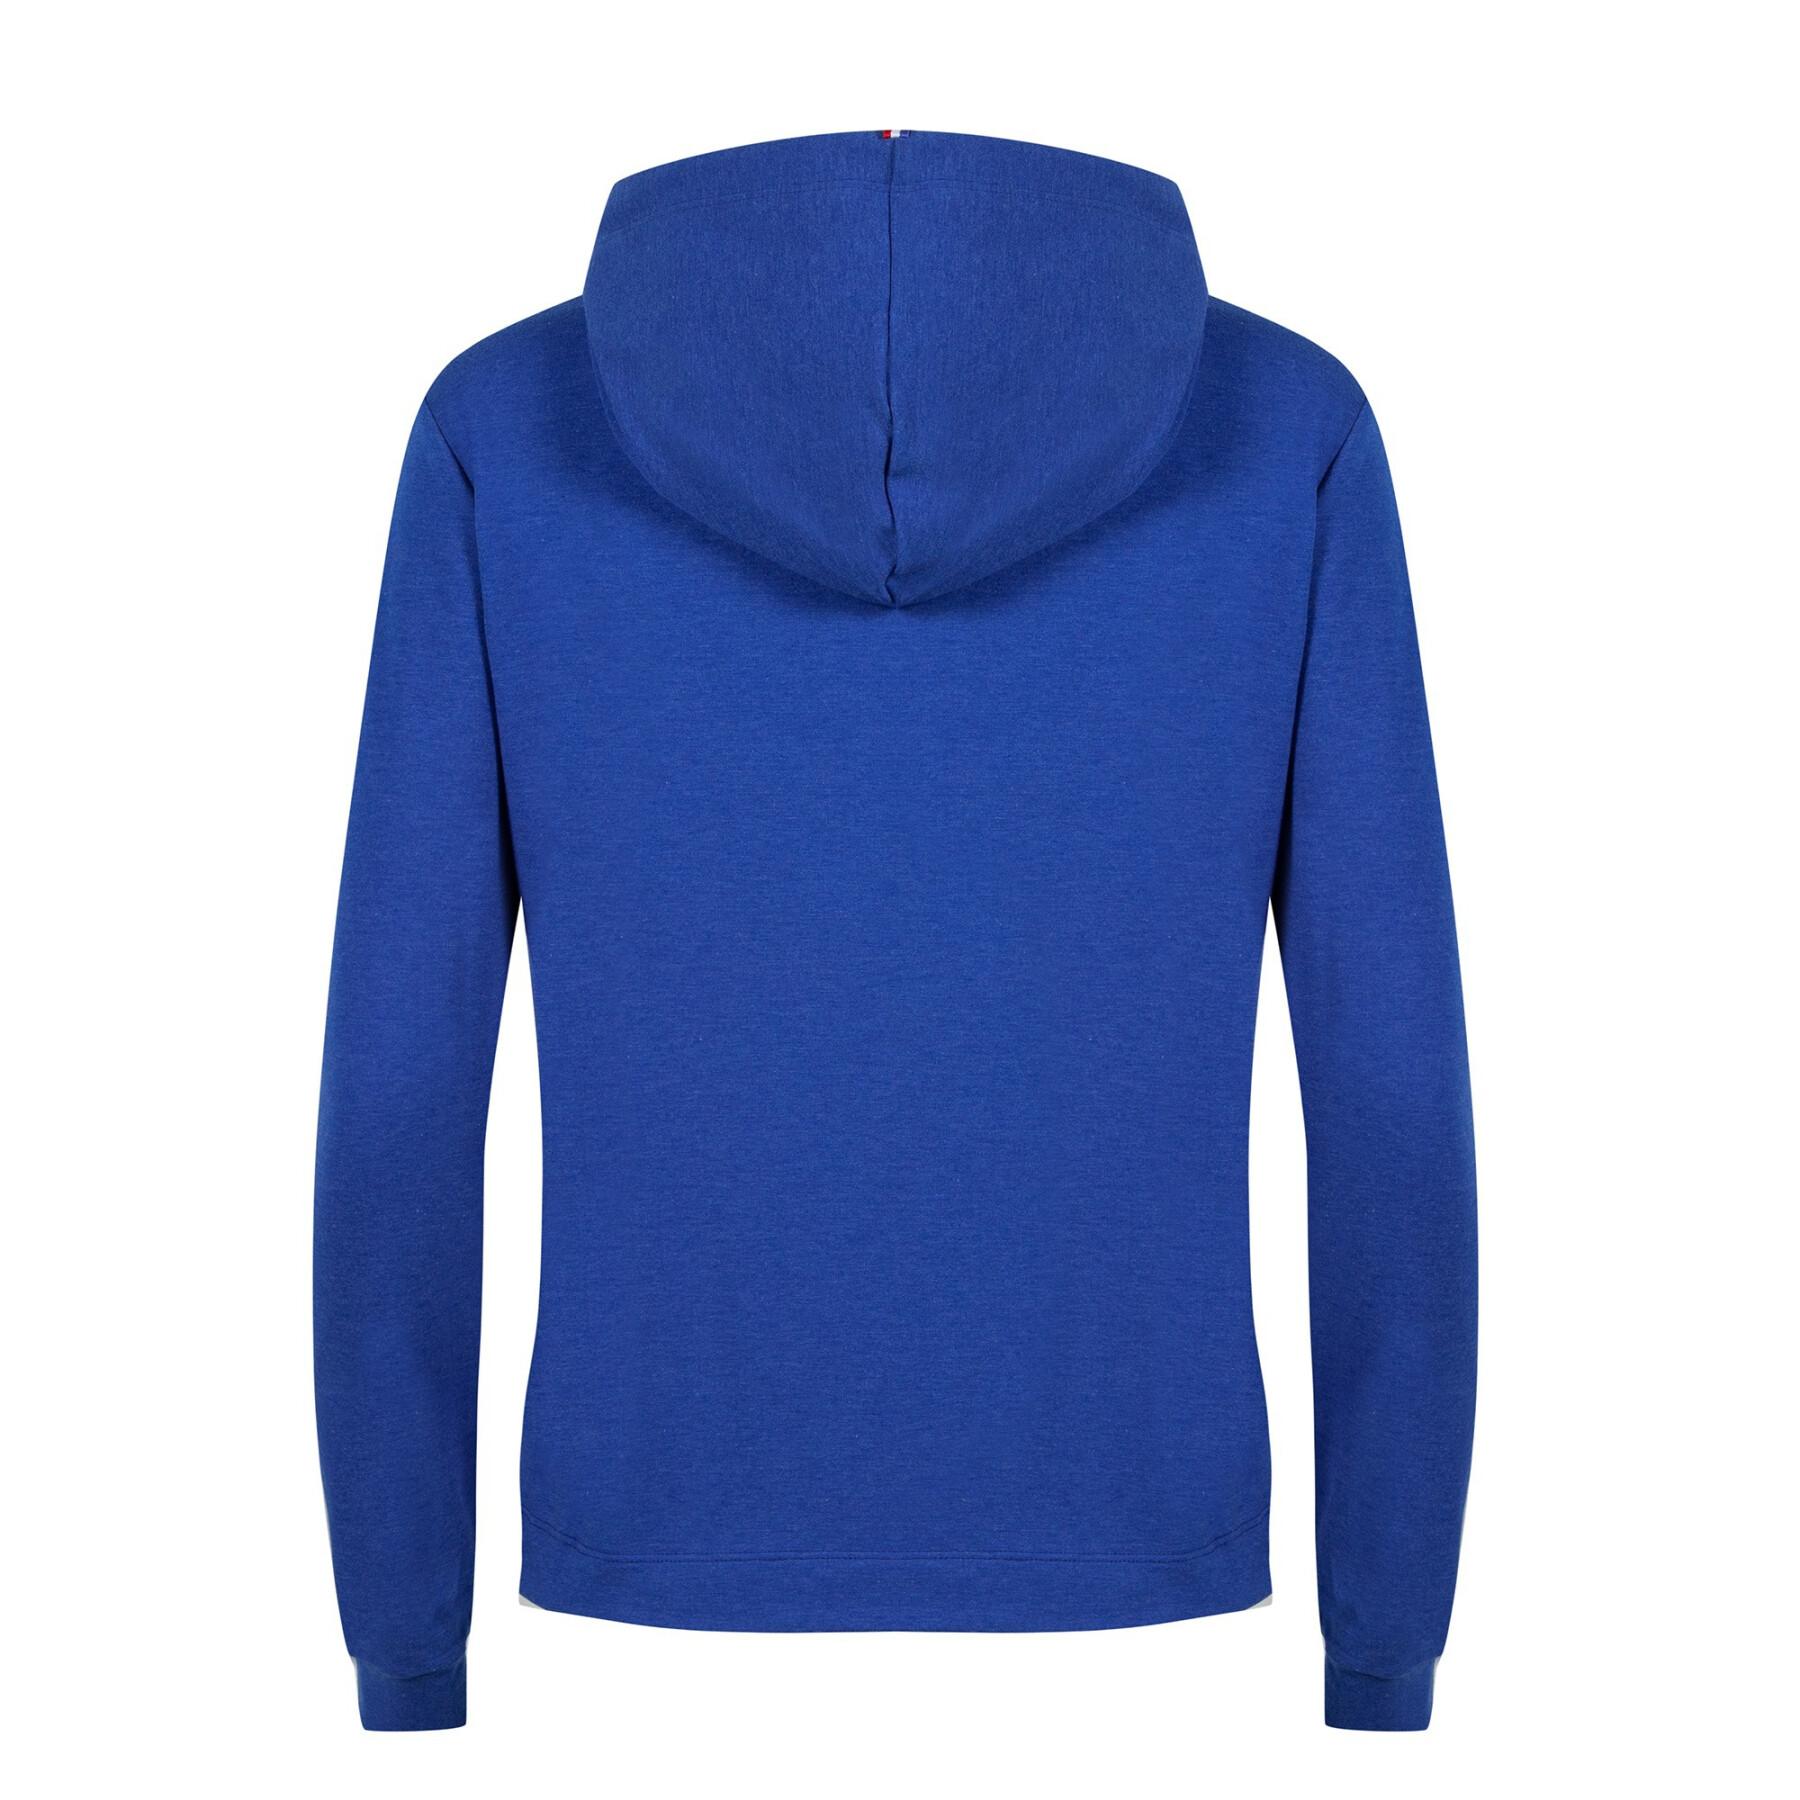 Women's hooded sweatshirt Le Coq Sportif Saison N°1